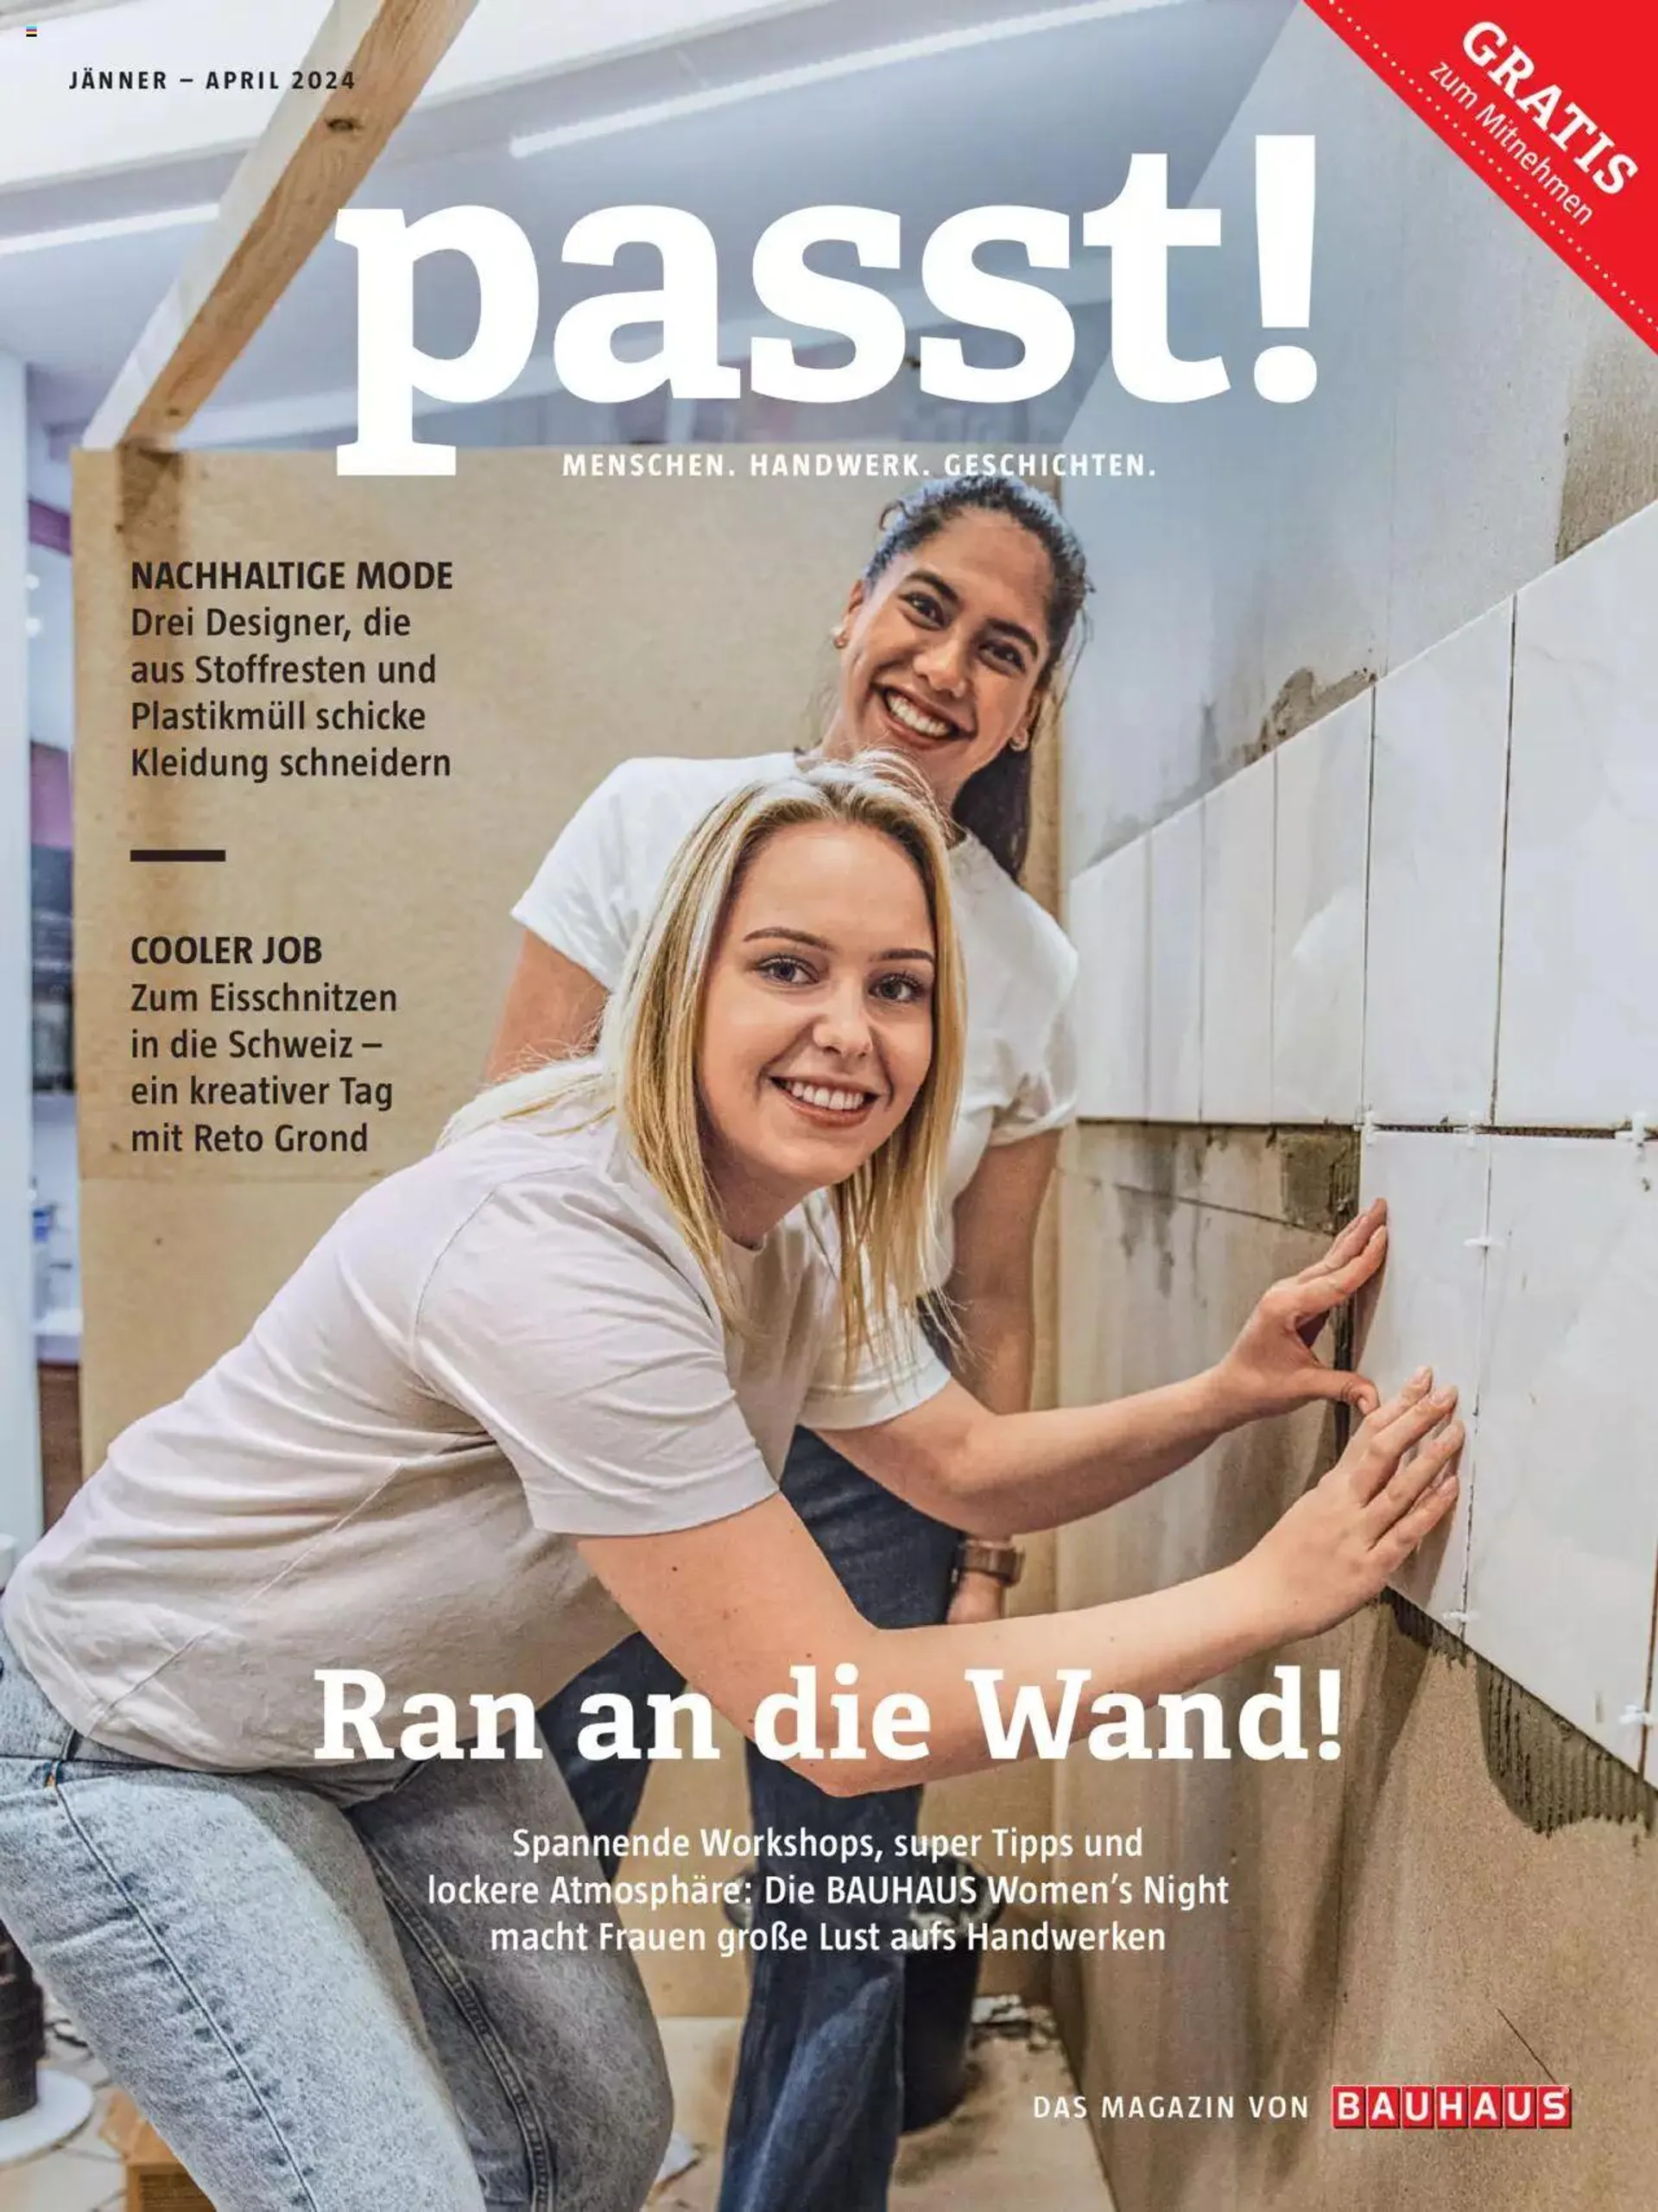 Bauhaus passt! Magazin von 1. Jänner bis 4. April 2024 - Flugblätt seite  1